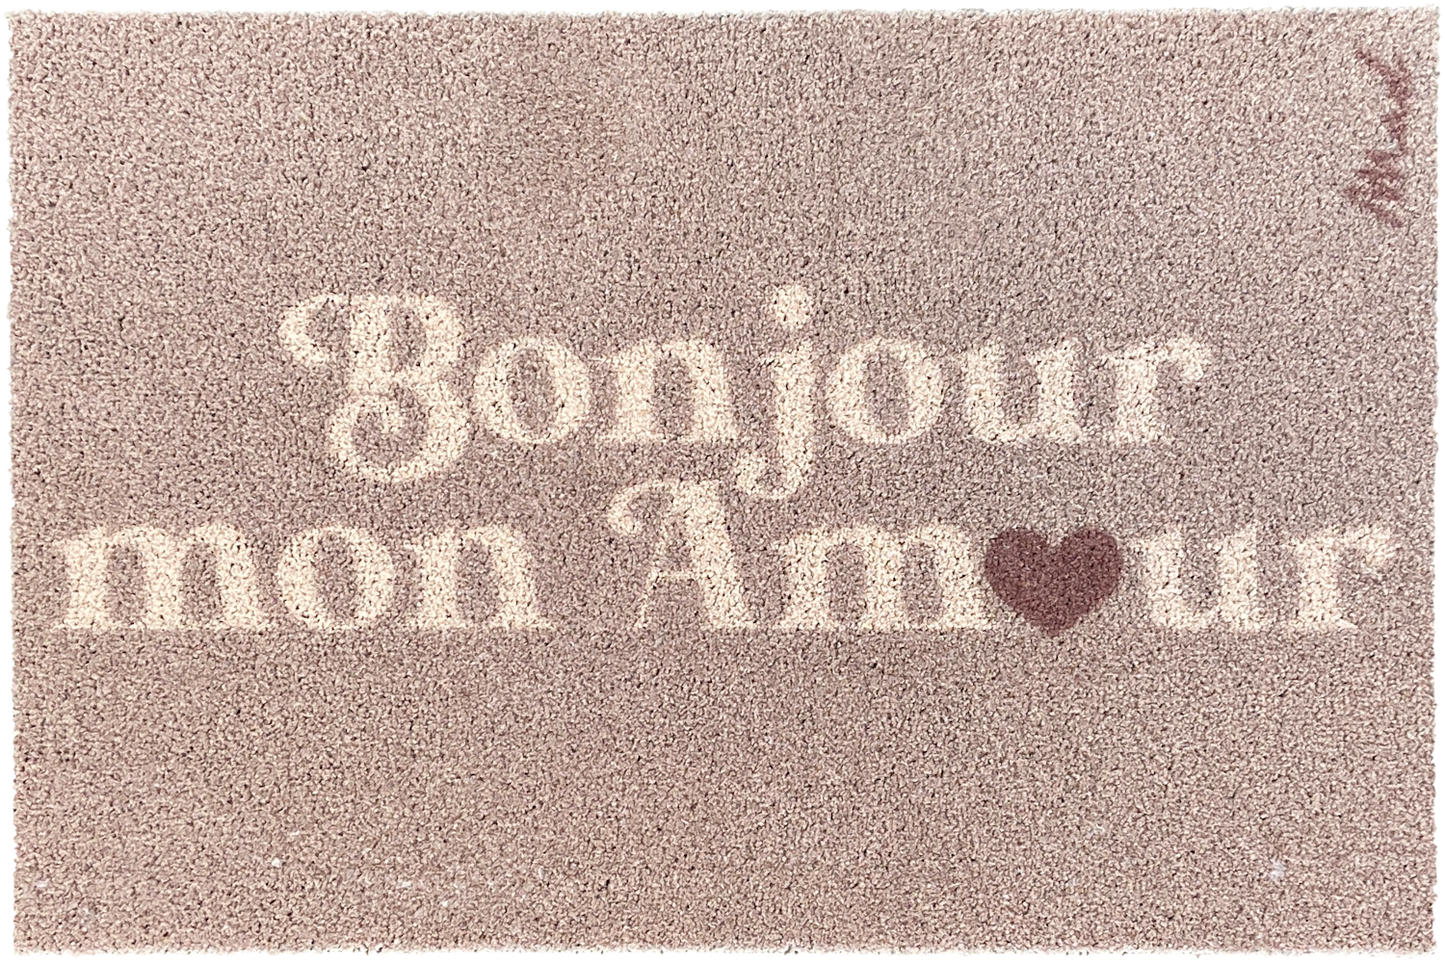 Mad about Mats "bonjour mon amour"